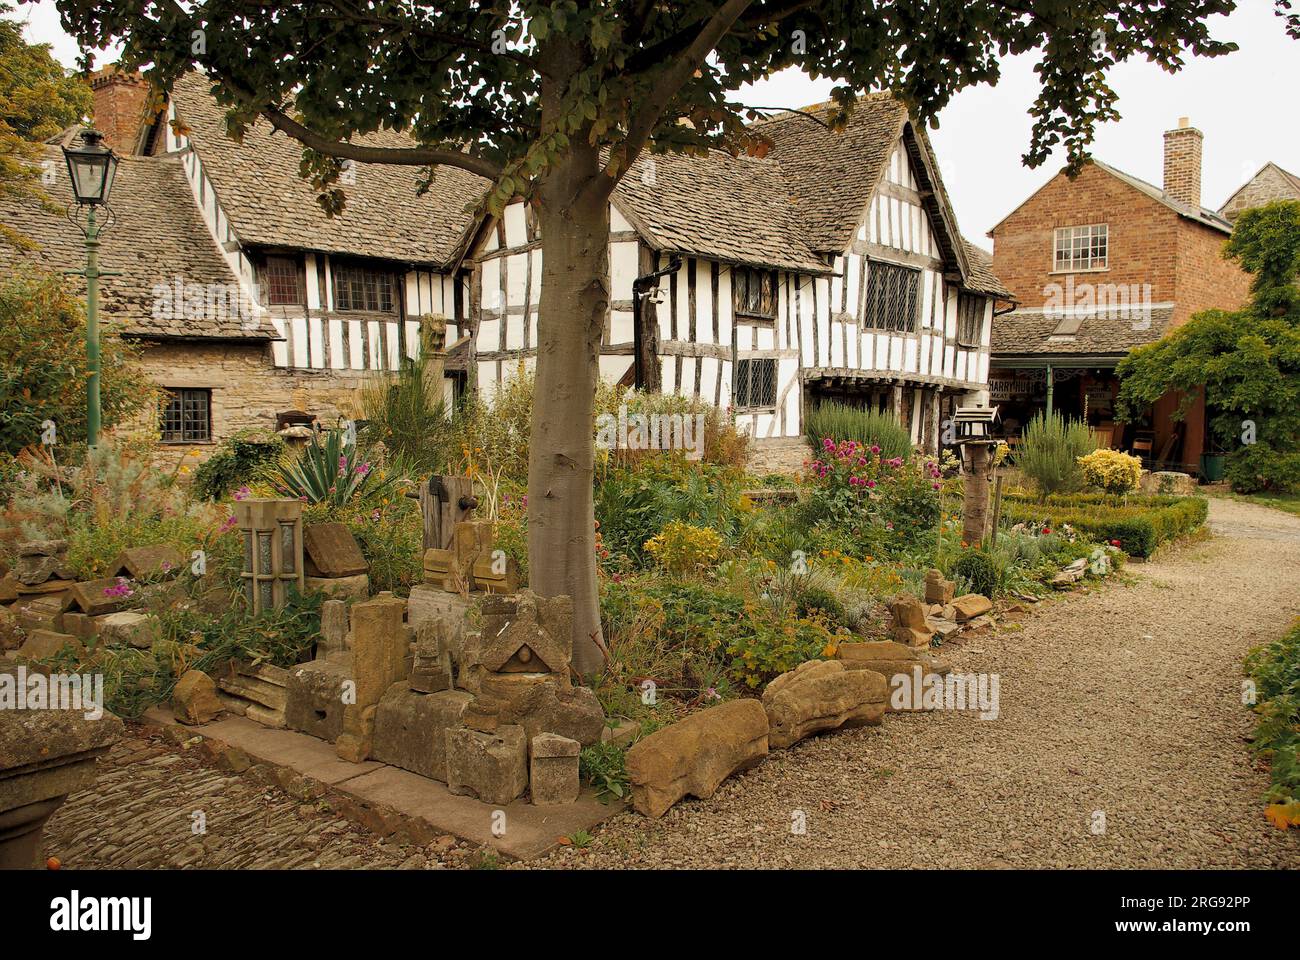 Almonry, Evesham, Worcestershire, vista su un giardino in stile Rocky. L'edificio del XIV secolo era una volta sede dell'Almonero dell'Abbazia benedettina, fondata a Evesham nell'VIII secolo. Dal 1957 l'Almonry è un museo e centro culturale. Foto Stock